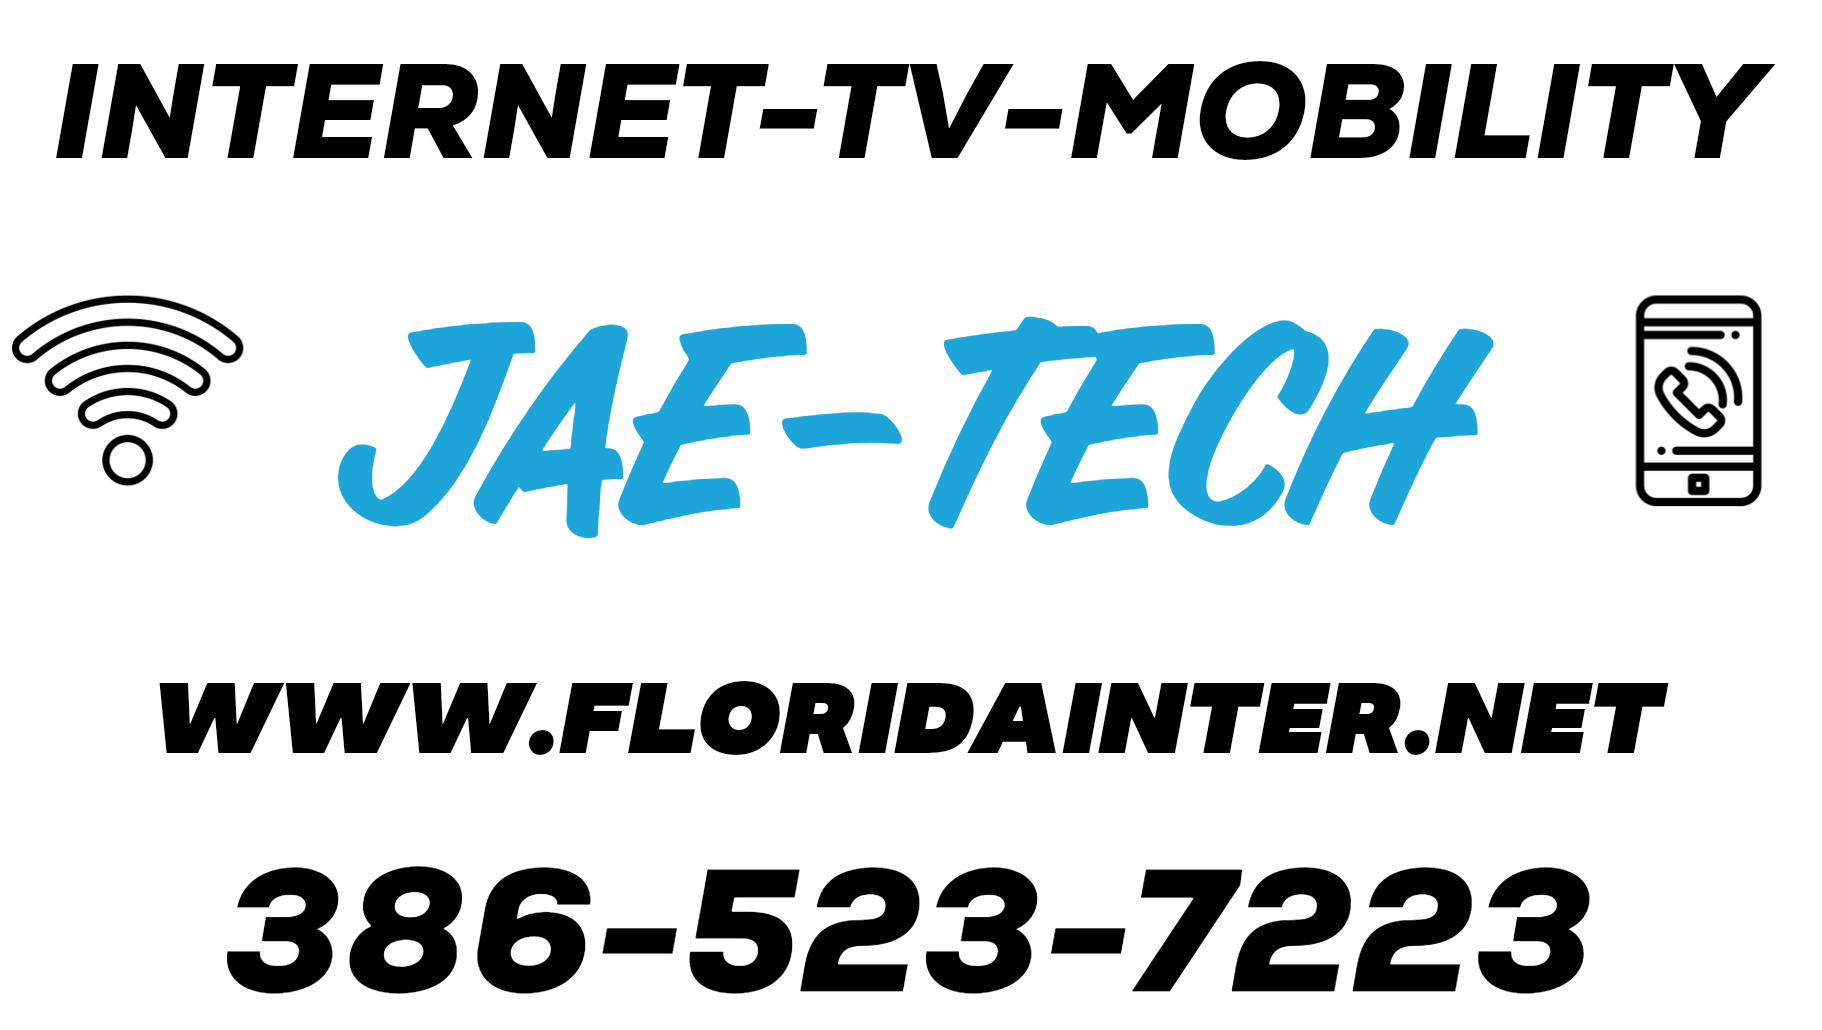 Jae-Tech Logo, Internet-Tv-Mobility services offered by Jae-Tech LLC www.floridainter.net 386-523-7223